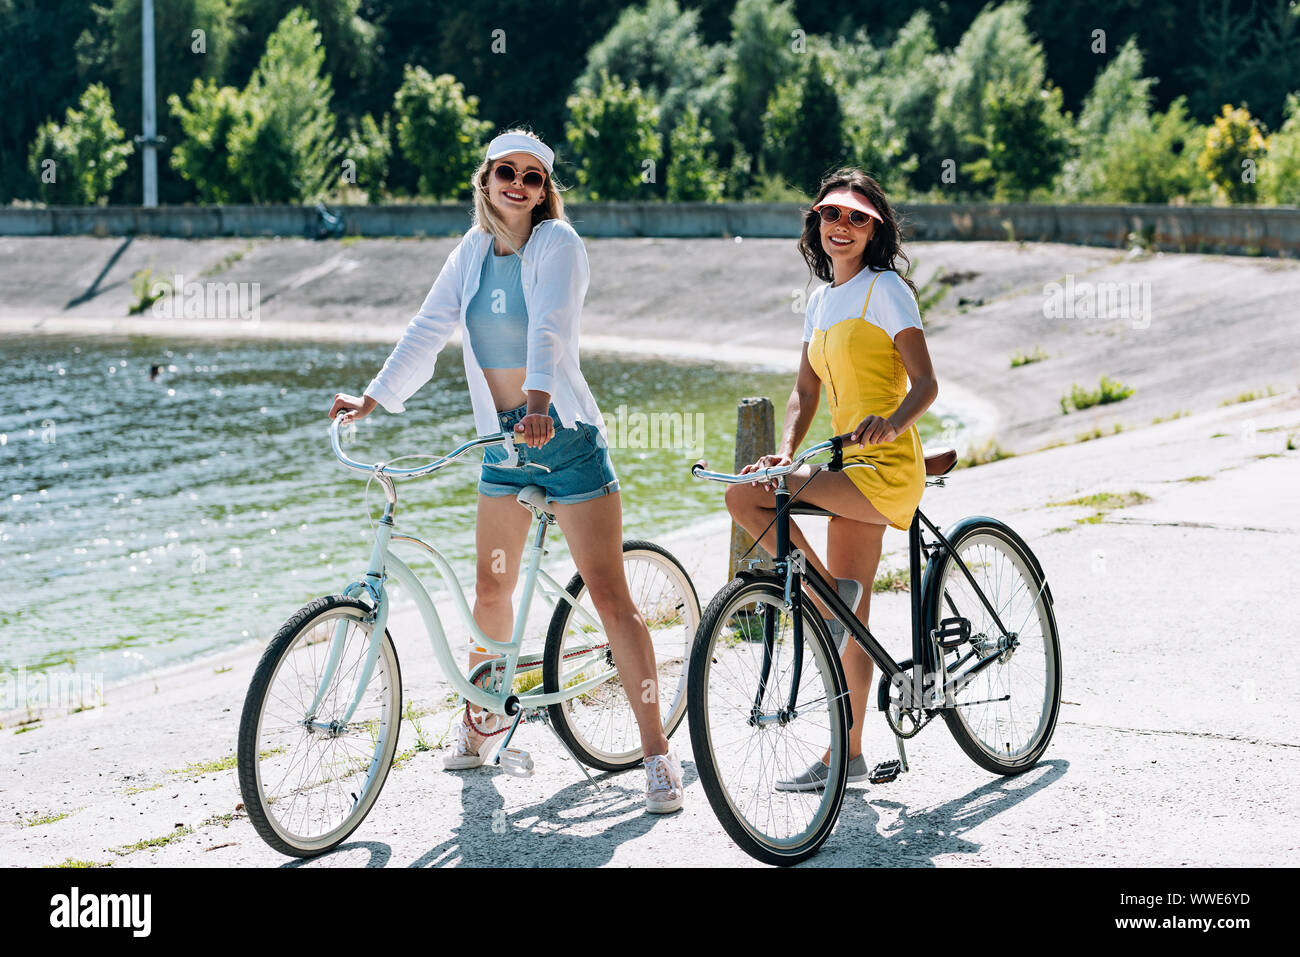 Chicas montando bicicletas fotografías e imágenes de alta resolución -  Página 7 - Alamy